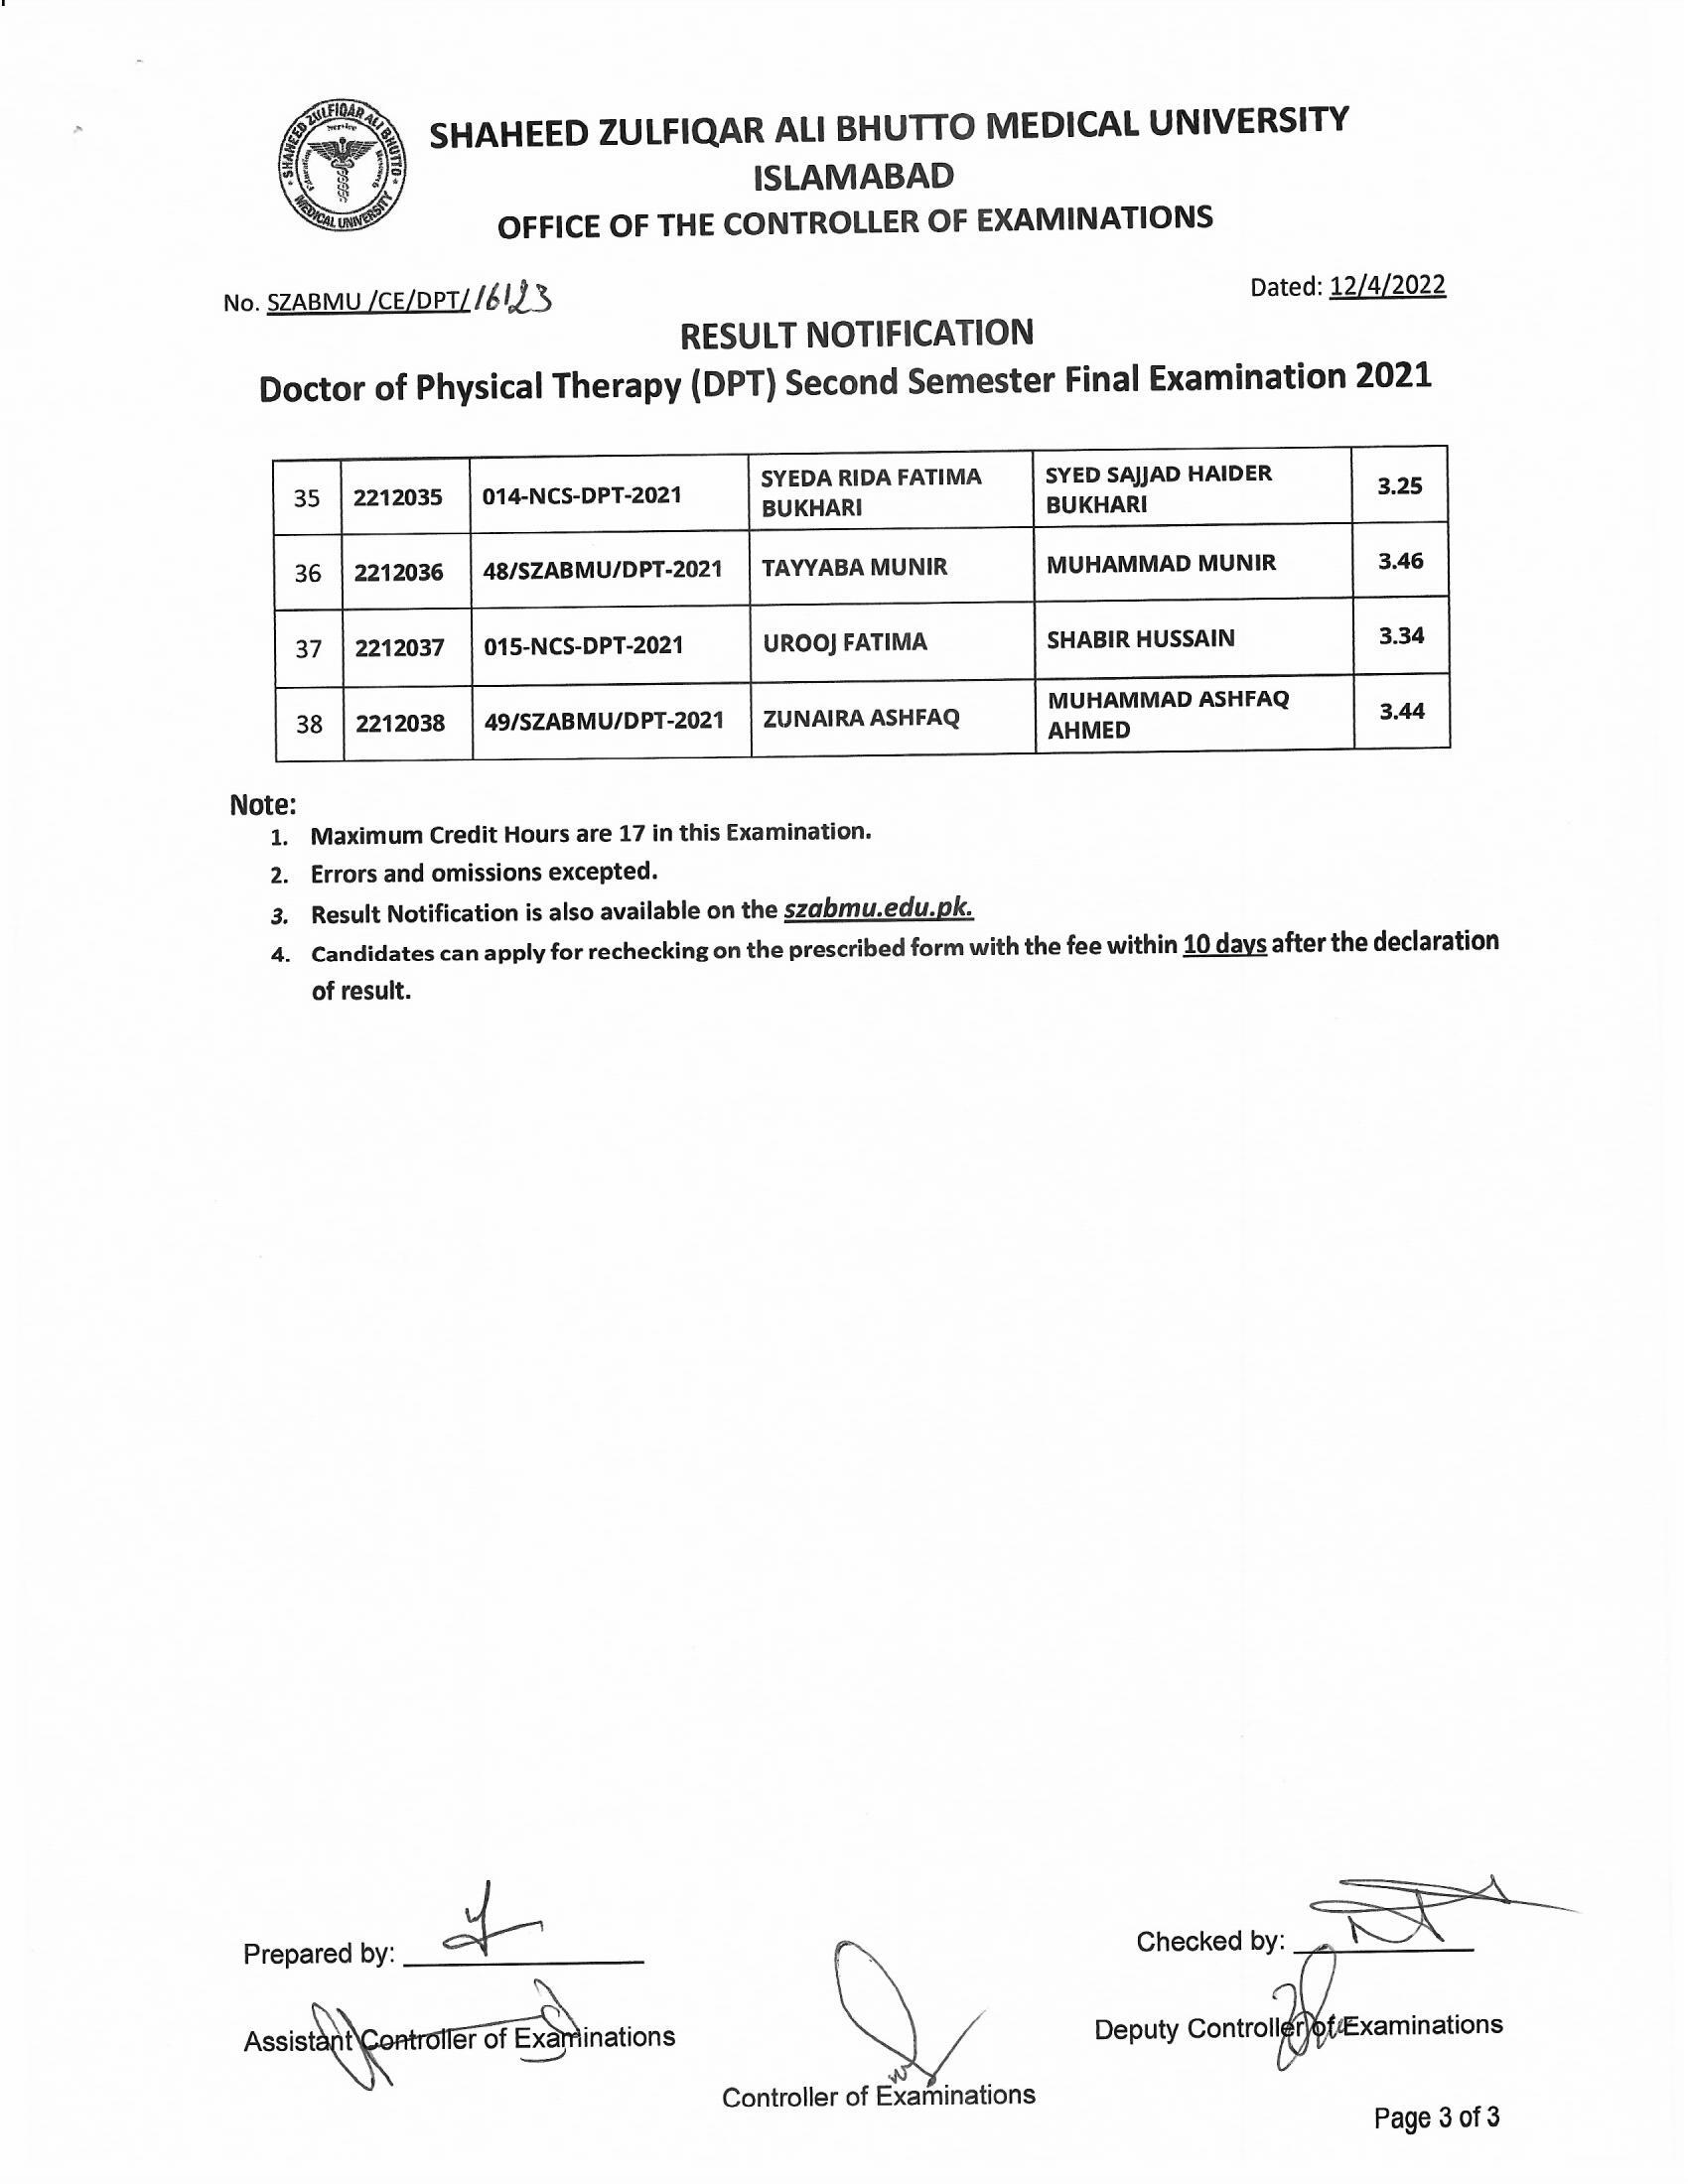 Result Notification - DPT Second Semester Final Examination 2021